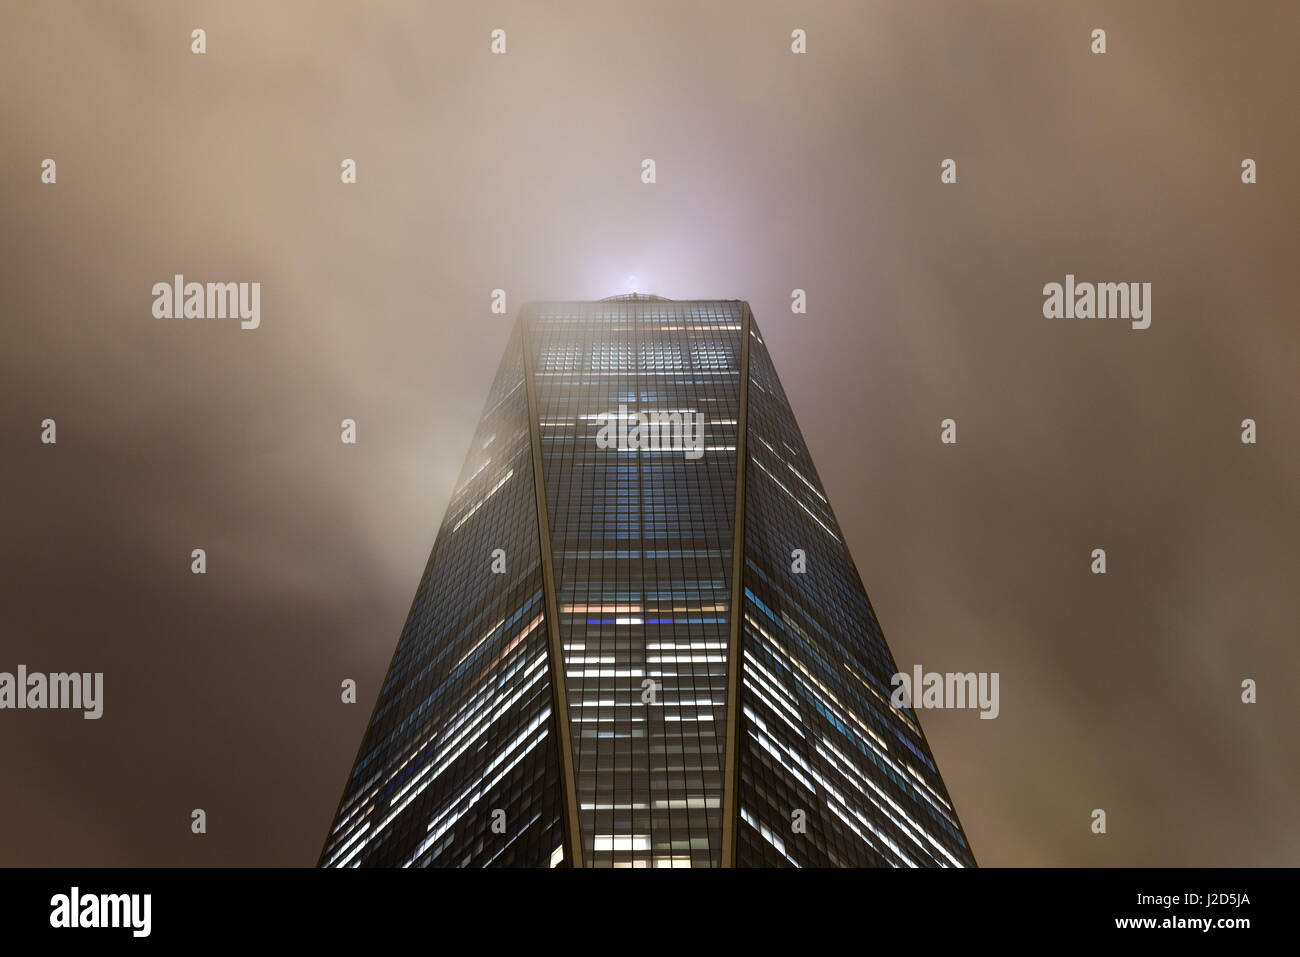 El One World Trade Center oscurece parcialmente con nubes bajas en la noche, Lower Manhattan, Nueva York Foto de stock